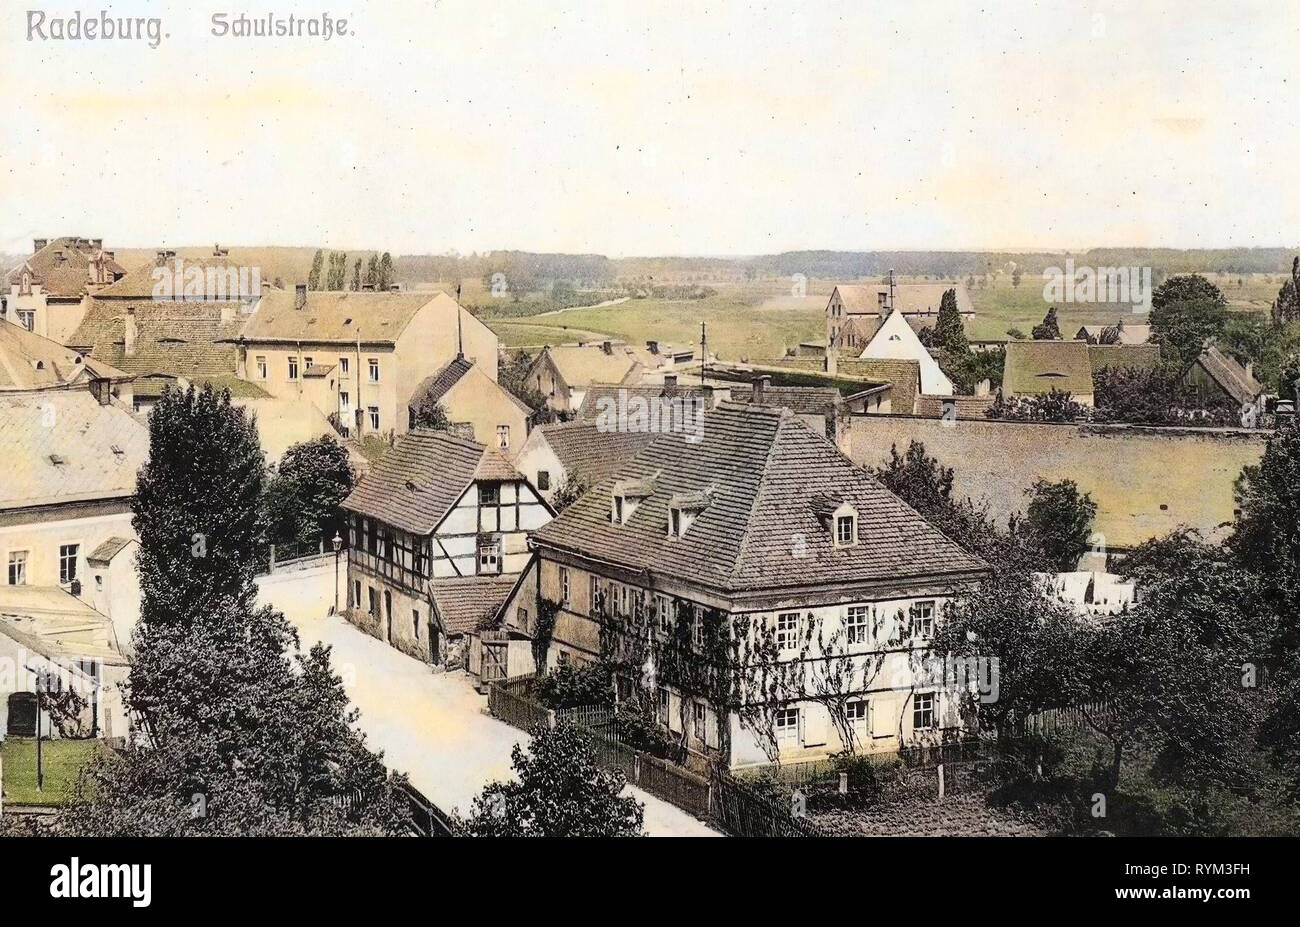 Dans les bâtiments, 1908 Radeburg, Landkreis Meißen, Radeburg, Schulstraße, Allemagne Banque D'Images